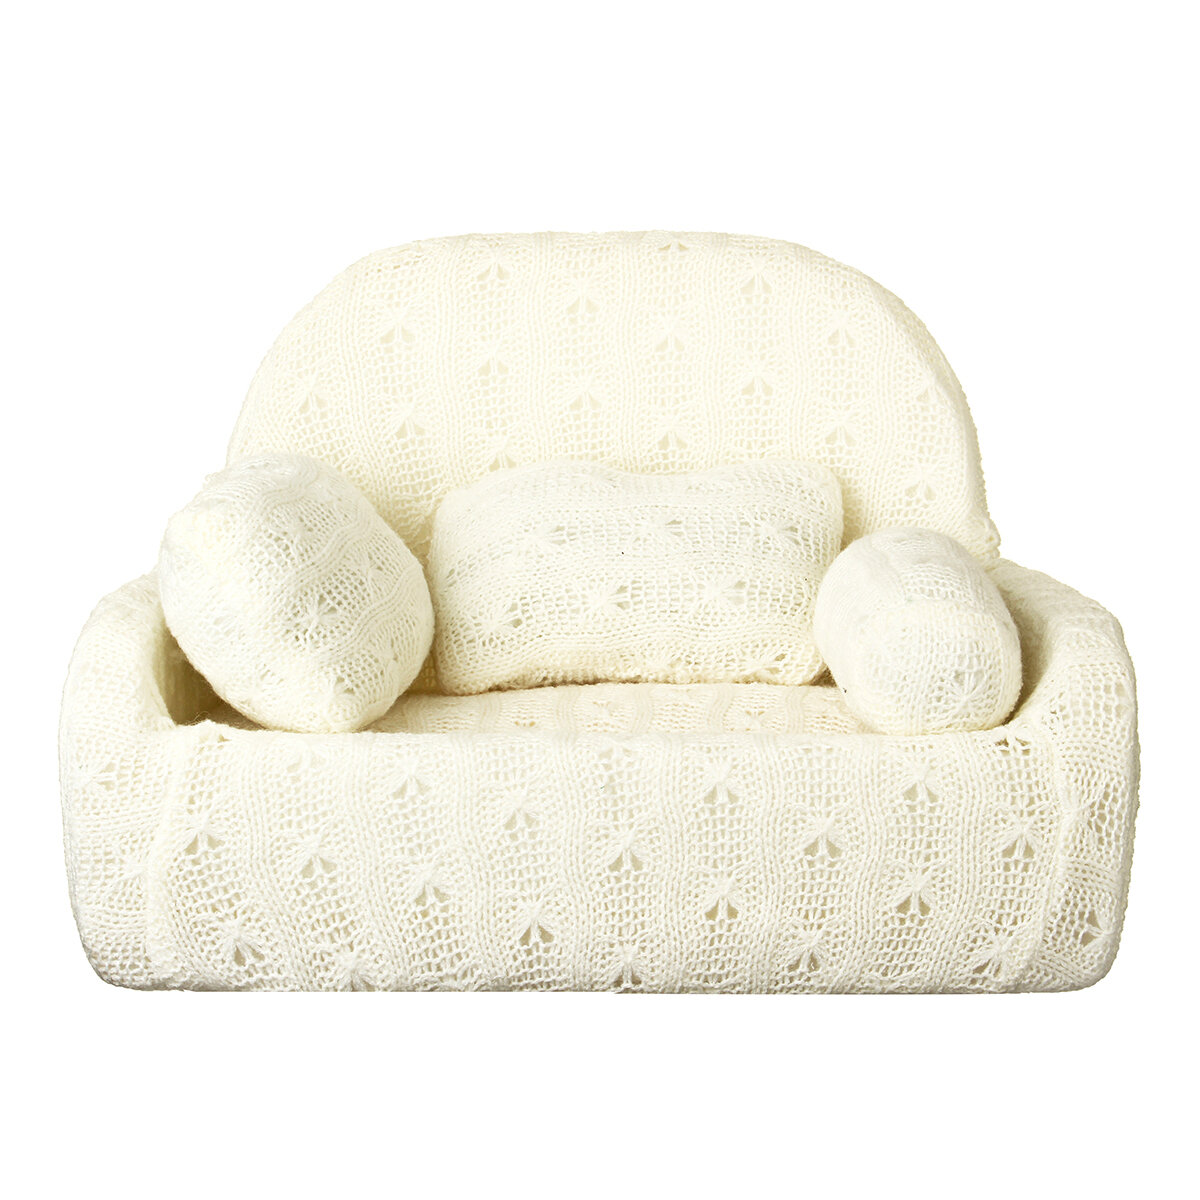 infant sofa